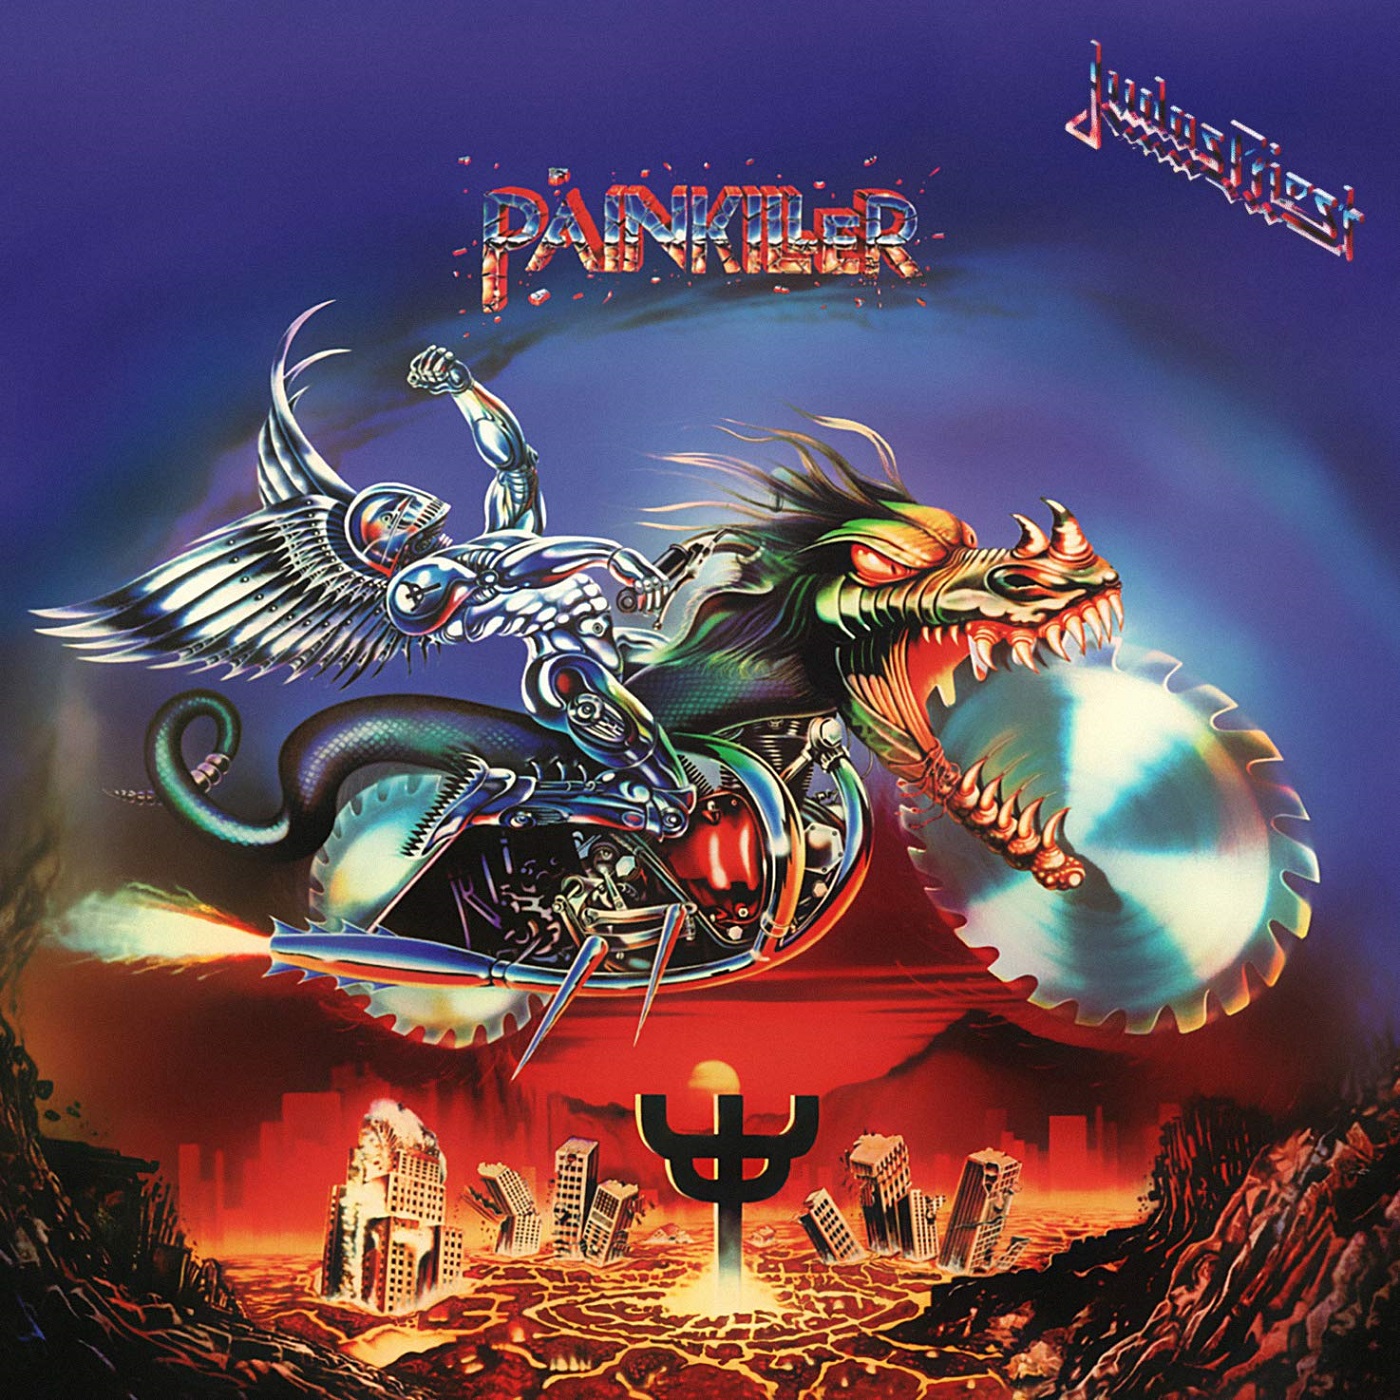 Judas Priest’s “Painkiller” (with Mhyk Monroe)